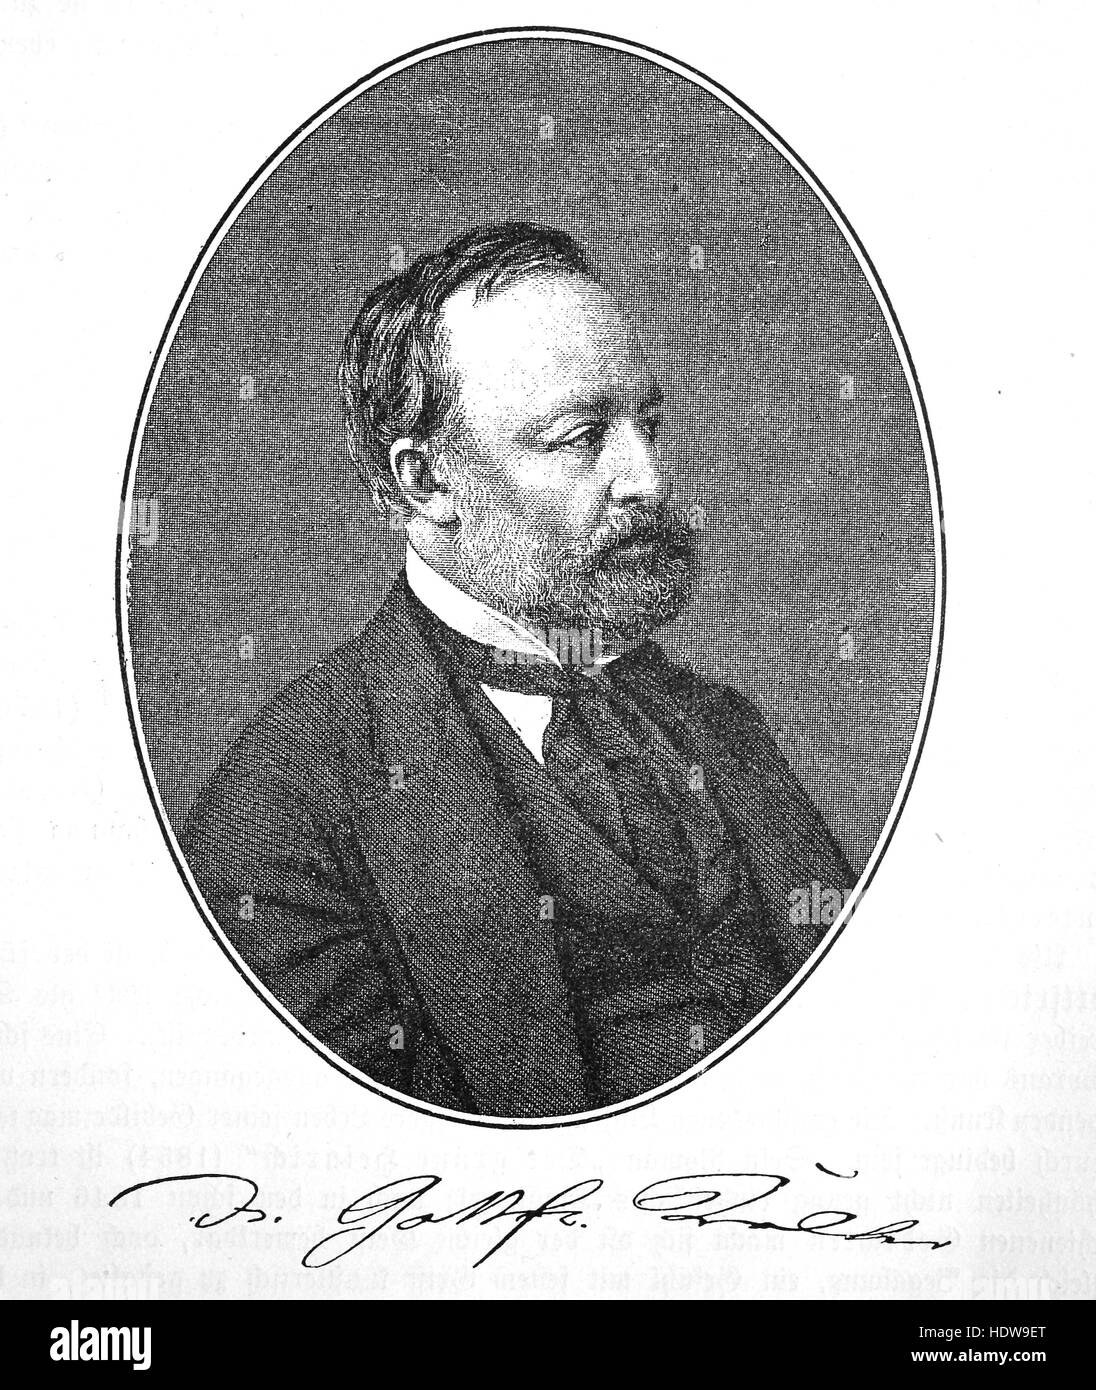 Gottfried Keller, 1819-1890, un poète et écrivain suisse de la littérature allemande, gravure sur bois de l'année 1880 Banque D'Images